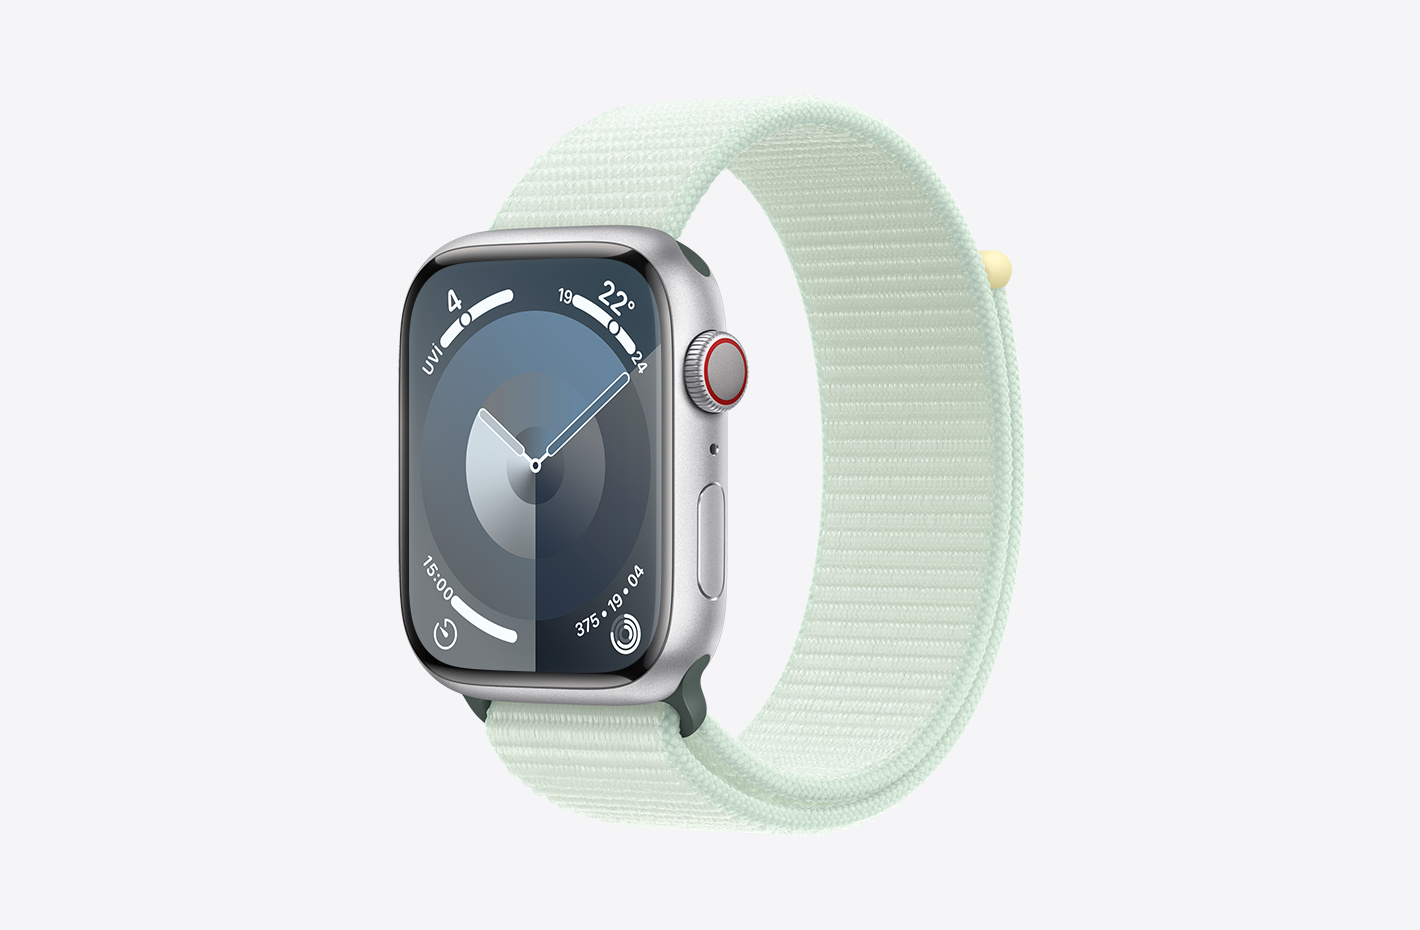 Mat yüzeyli Gümüş Rengi Alüminyum kasa Apple Watch ile cırt cırtlı tasarıma ve çift katmanlı naylon örme dokuya sahip Uçuk Nane (yeşil) Spor Loop’un açılı görünümü